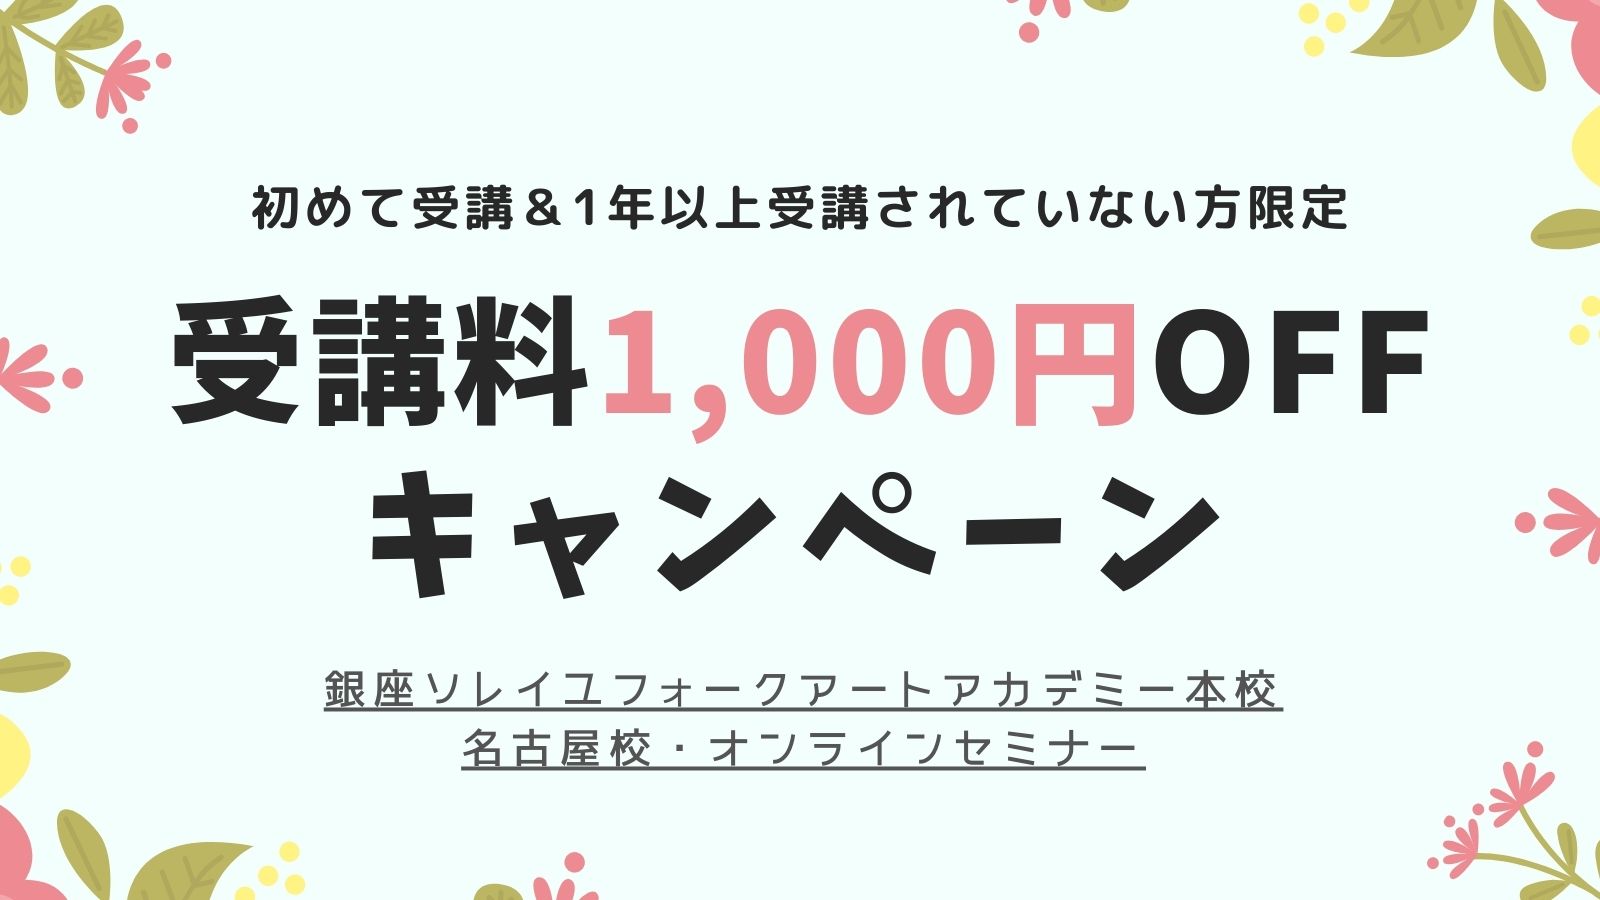 受講料1,000円OFF キャンペーン